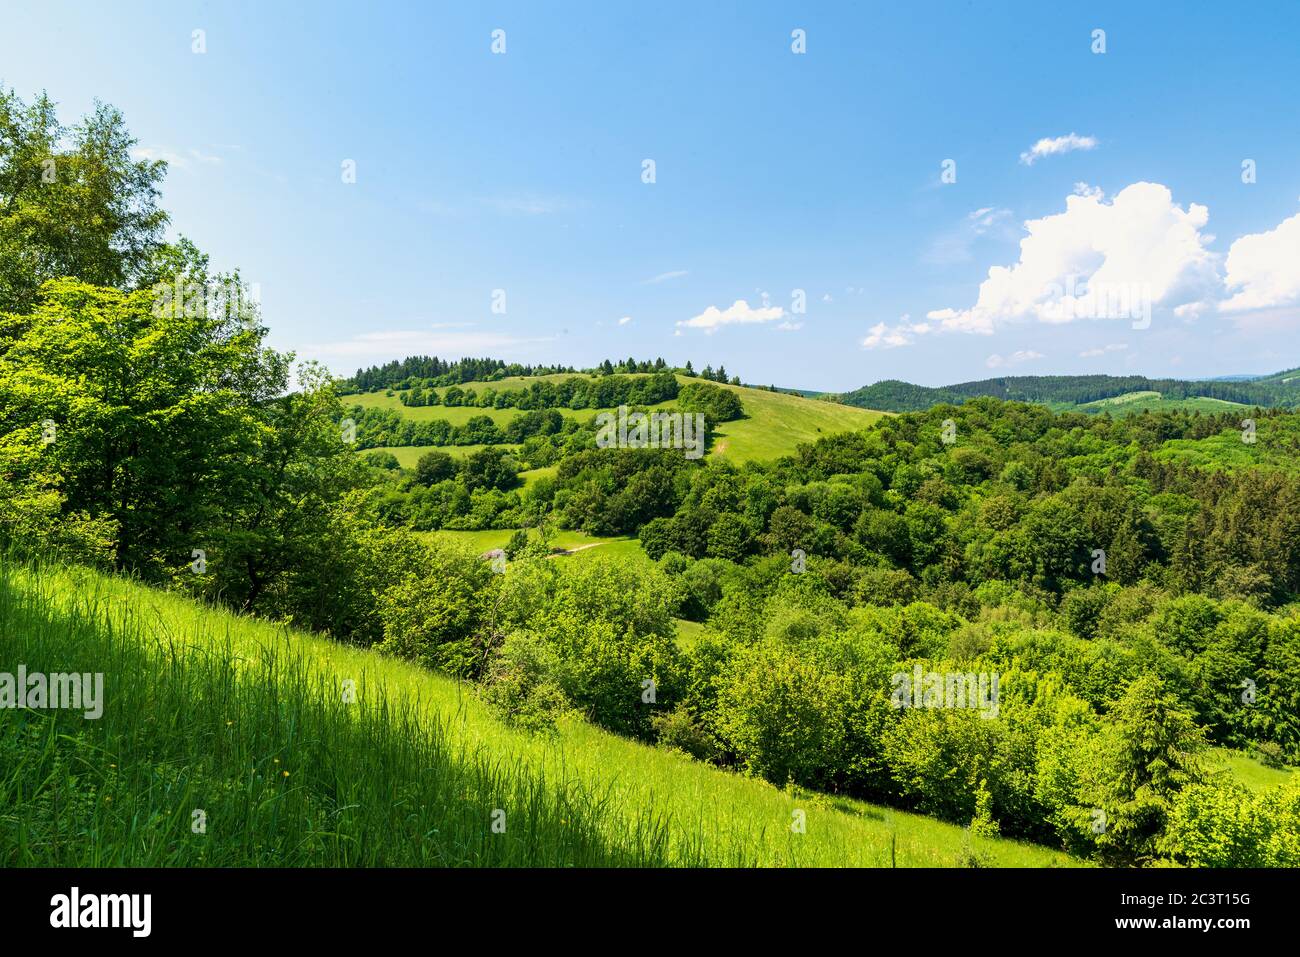 Belle printemps Biele Karpaty montagnes près du village de Vrsatske Podhradie en Slovaquie avec des collines couvertes par un mélange de prairies et de forêt et de ciel bleu Banque D'Images